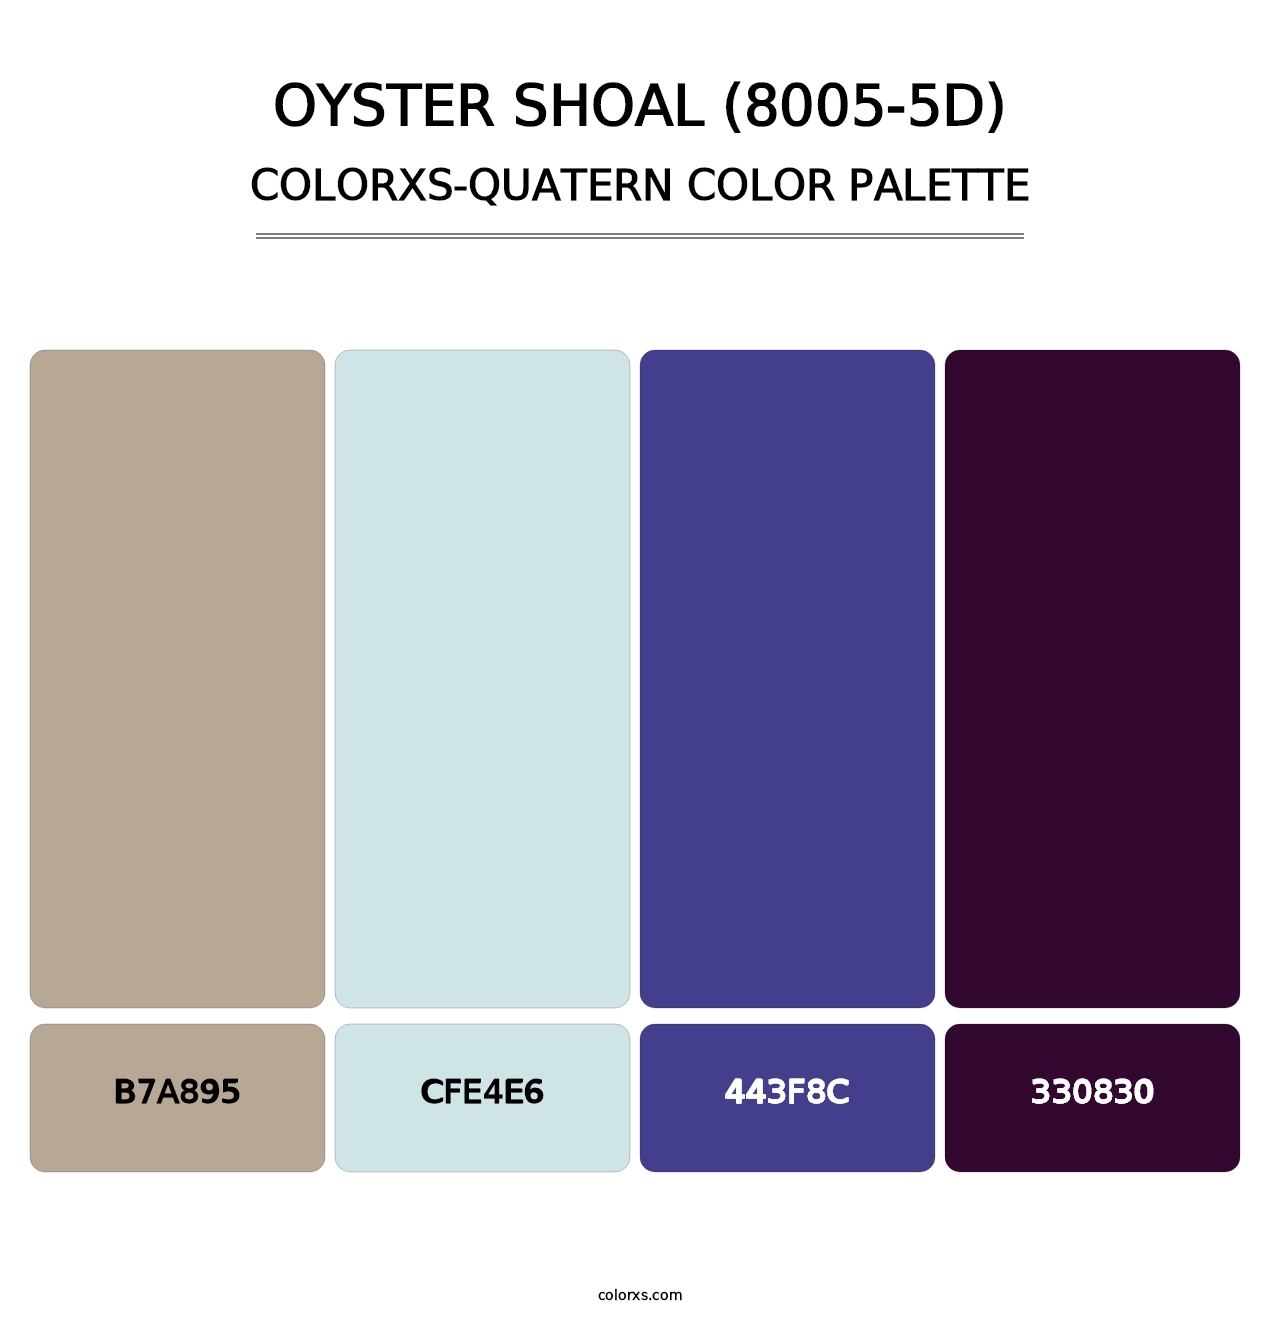 Oyster Shoal (8005-5D) - Colorxs Quatern Palette